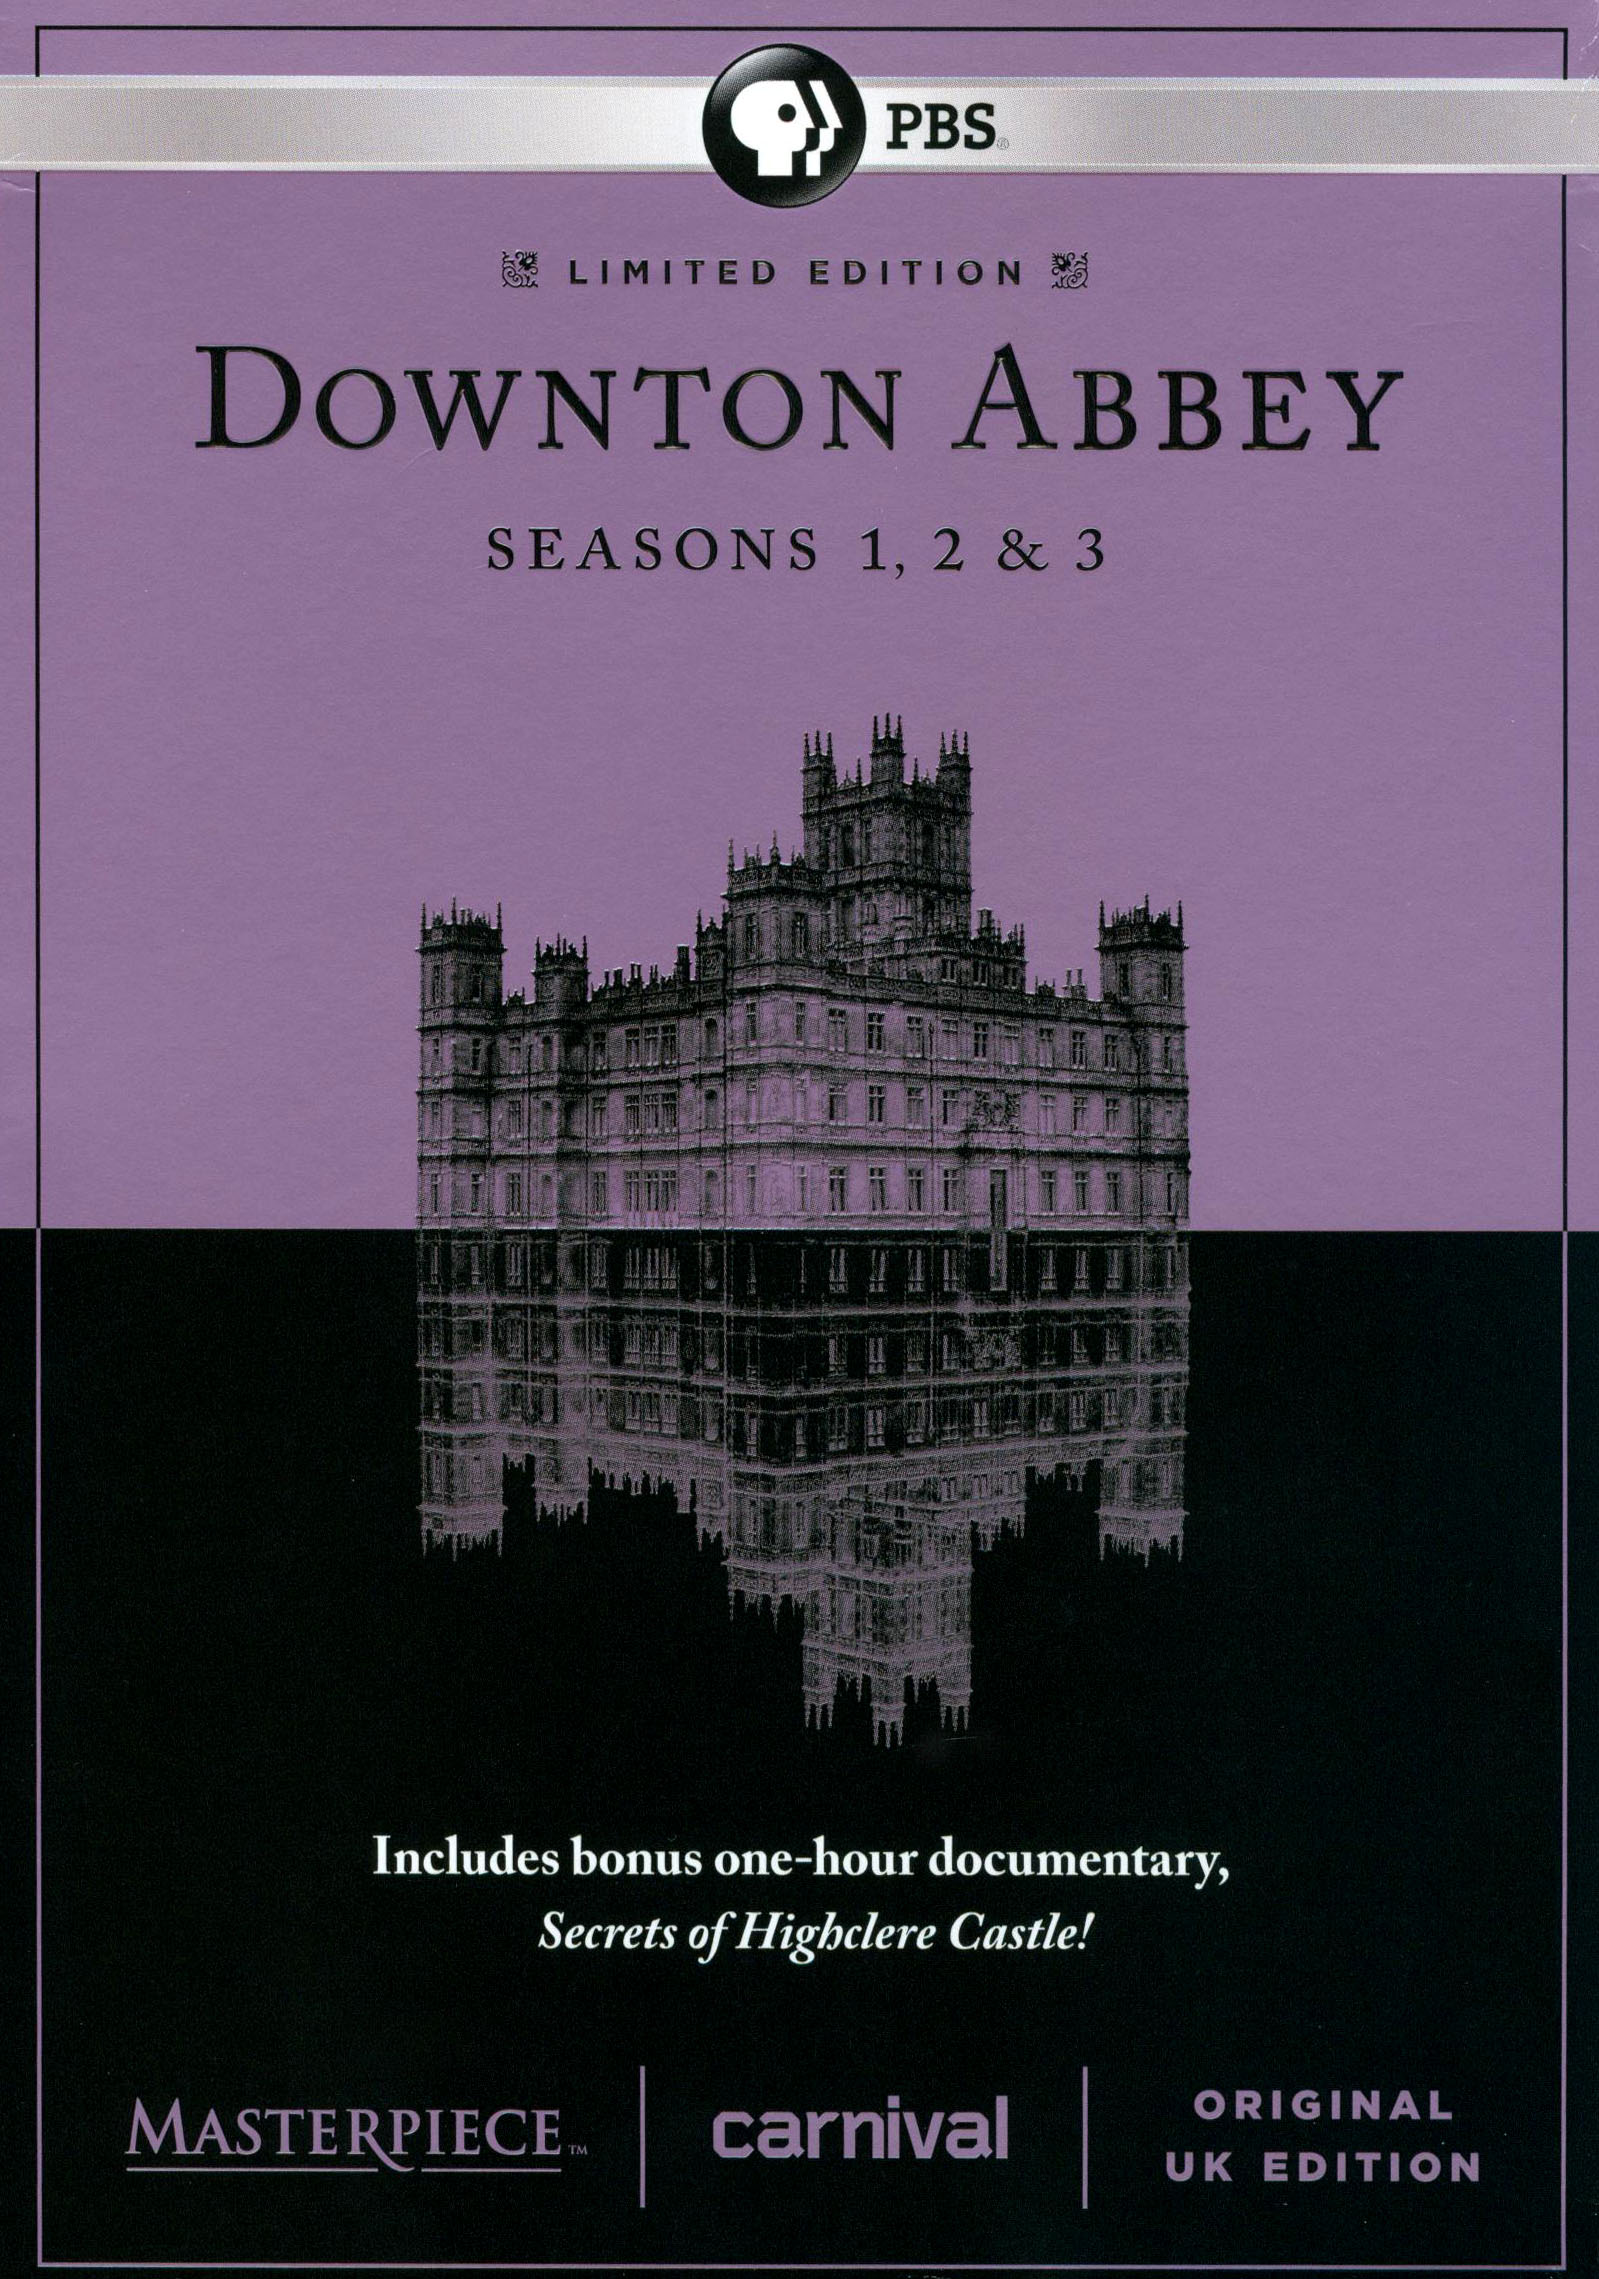 Downton Abbey Seasons 1 & 2 Mini Parallel Base Card CCC-87